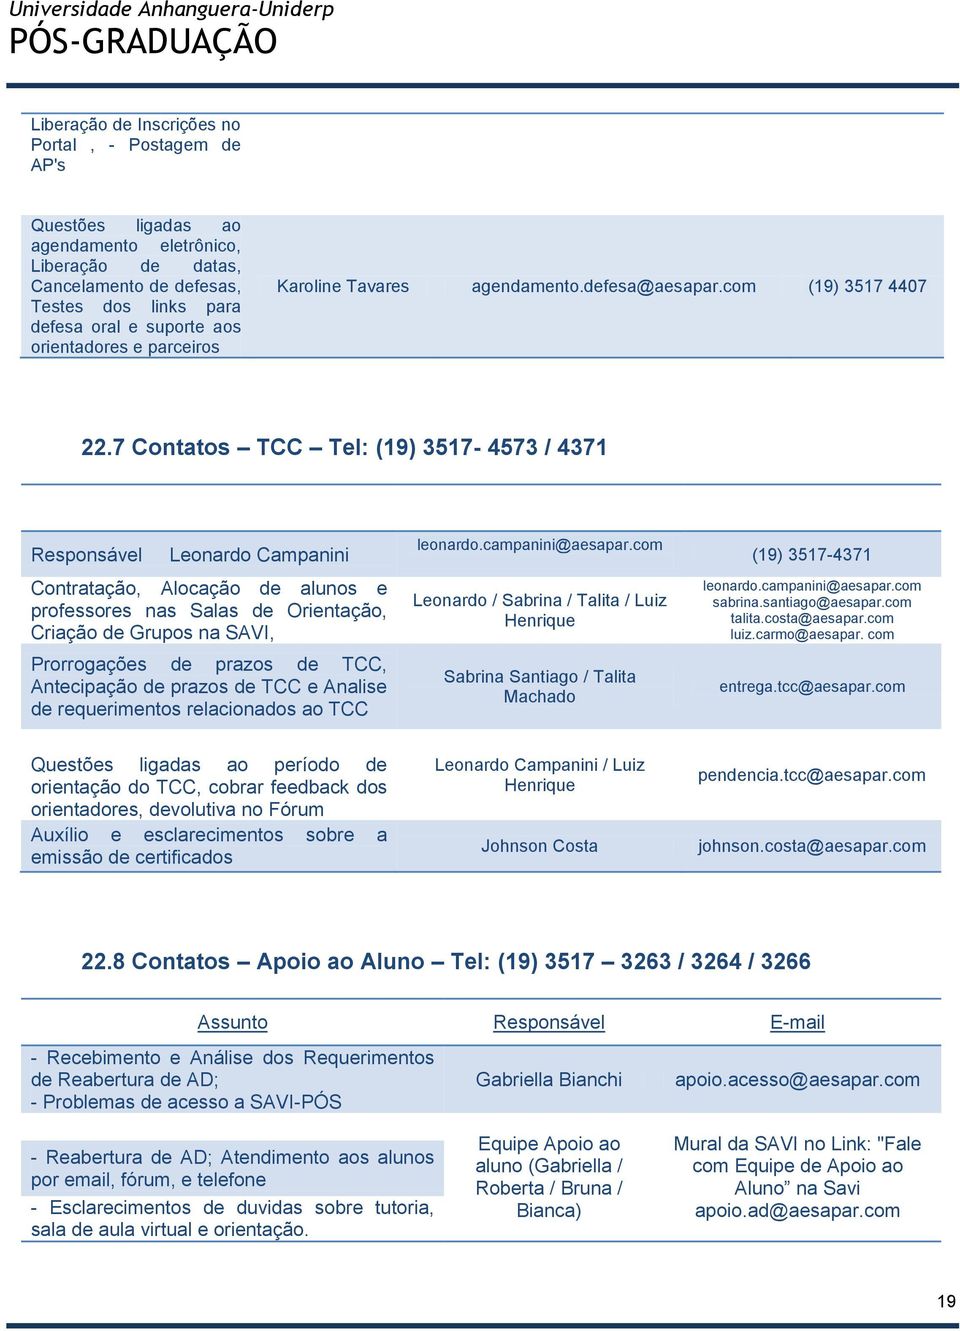 7 Contatos TCC Tel: (19) 3517-4573 / 4371 Responsável Leonardo Campanini Contratação, Alocação de alunos e professores nas Salas de Orientação, Criação de Grupos na SAVI, Prorrogações de prazos de